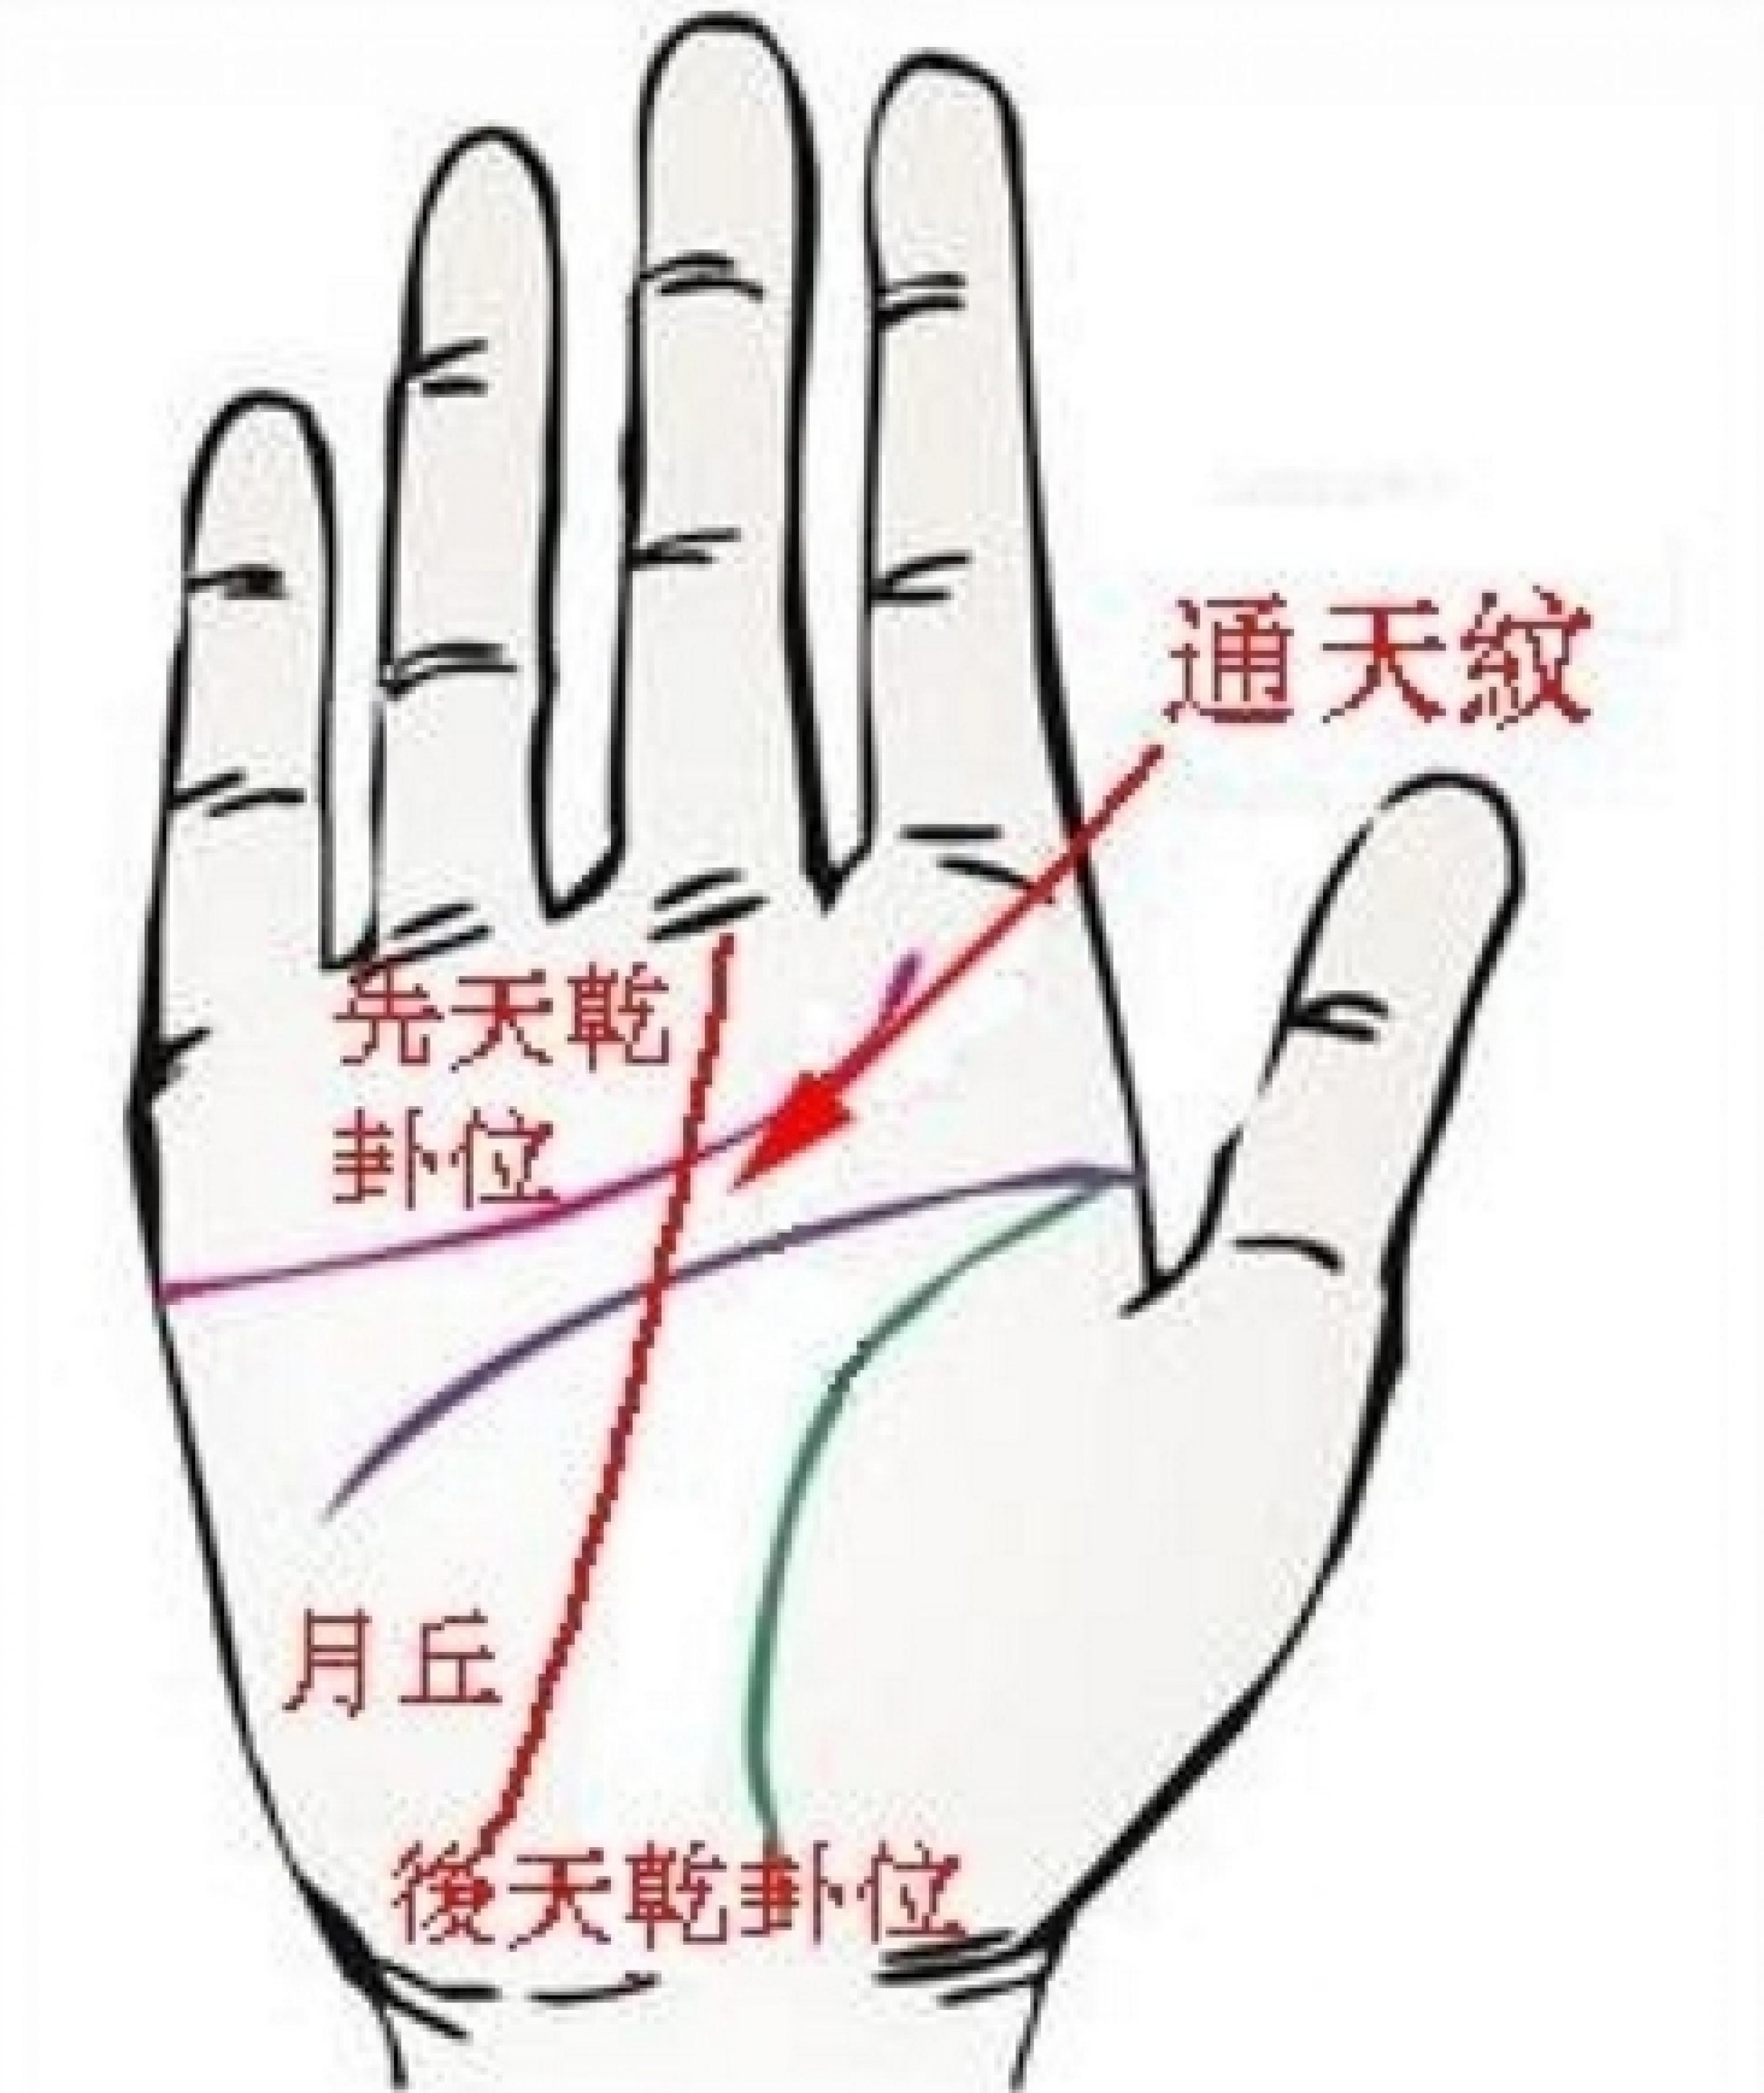 掌纹诊病实用图谱 手掌上有这样的纹络_华夏智能网